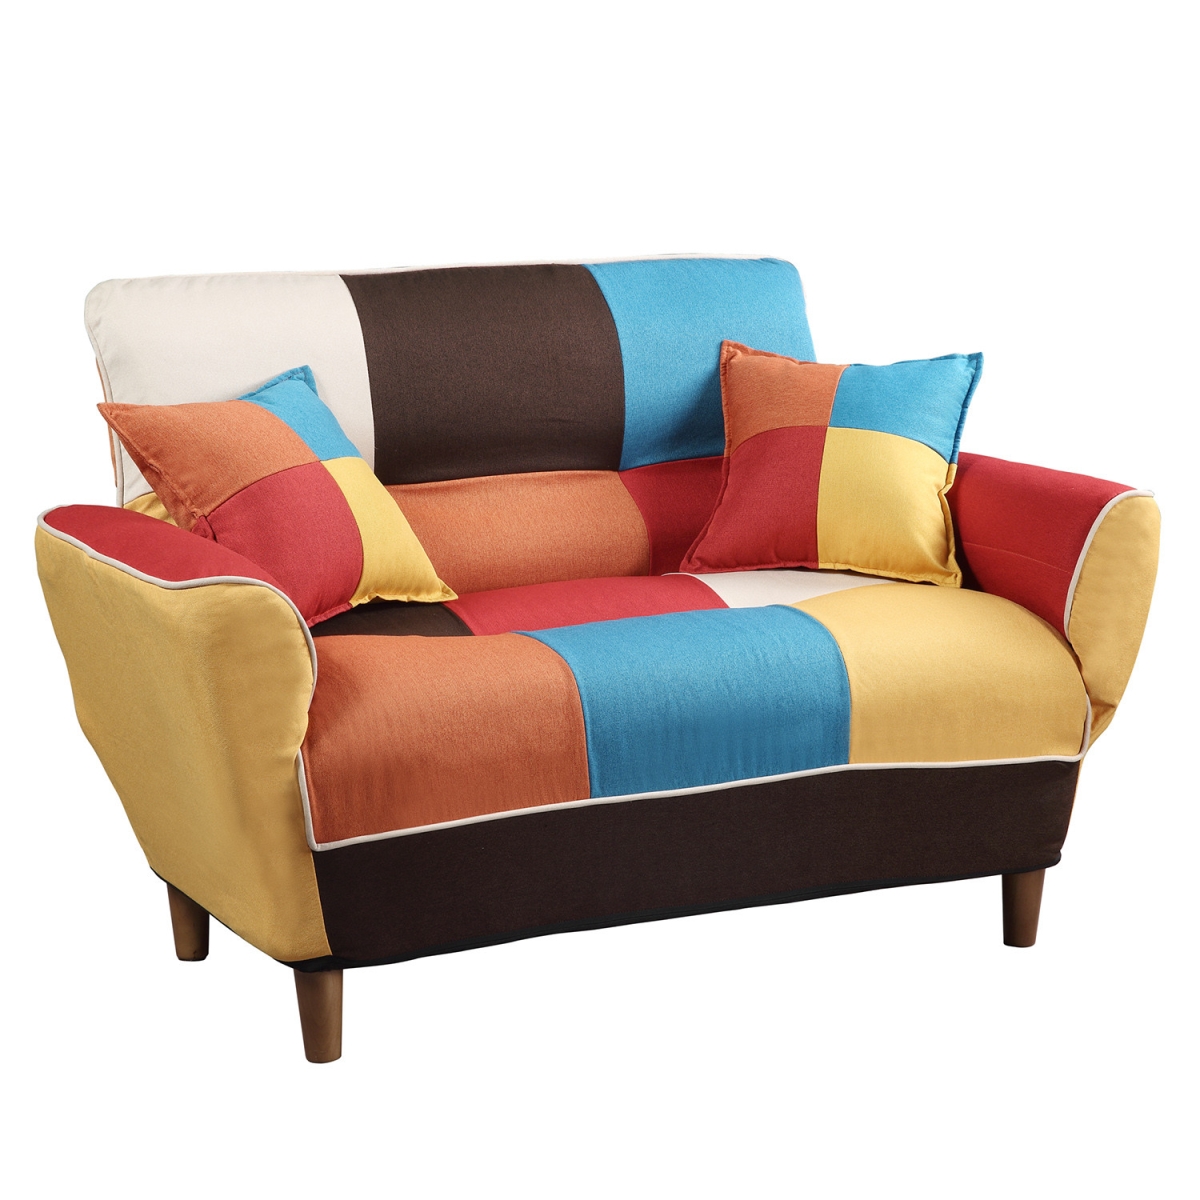 Gfancy Fixtures 46 in. Brown Linen Futon Convertible Sleeper Love Seat Sofa & Toss Pillows